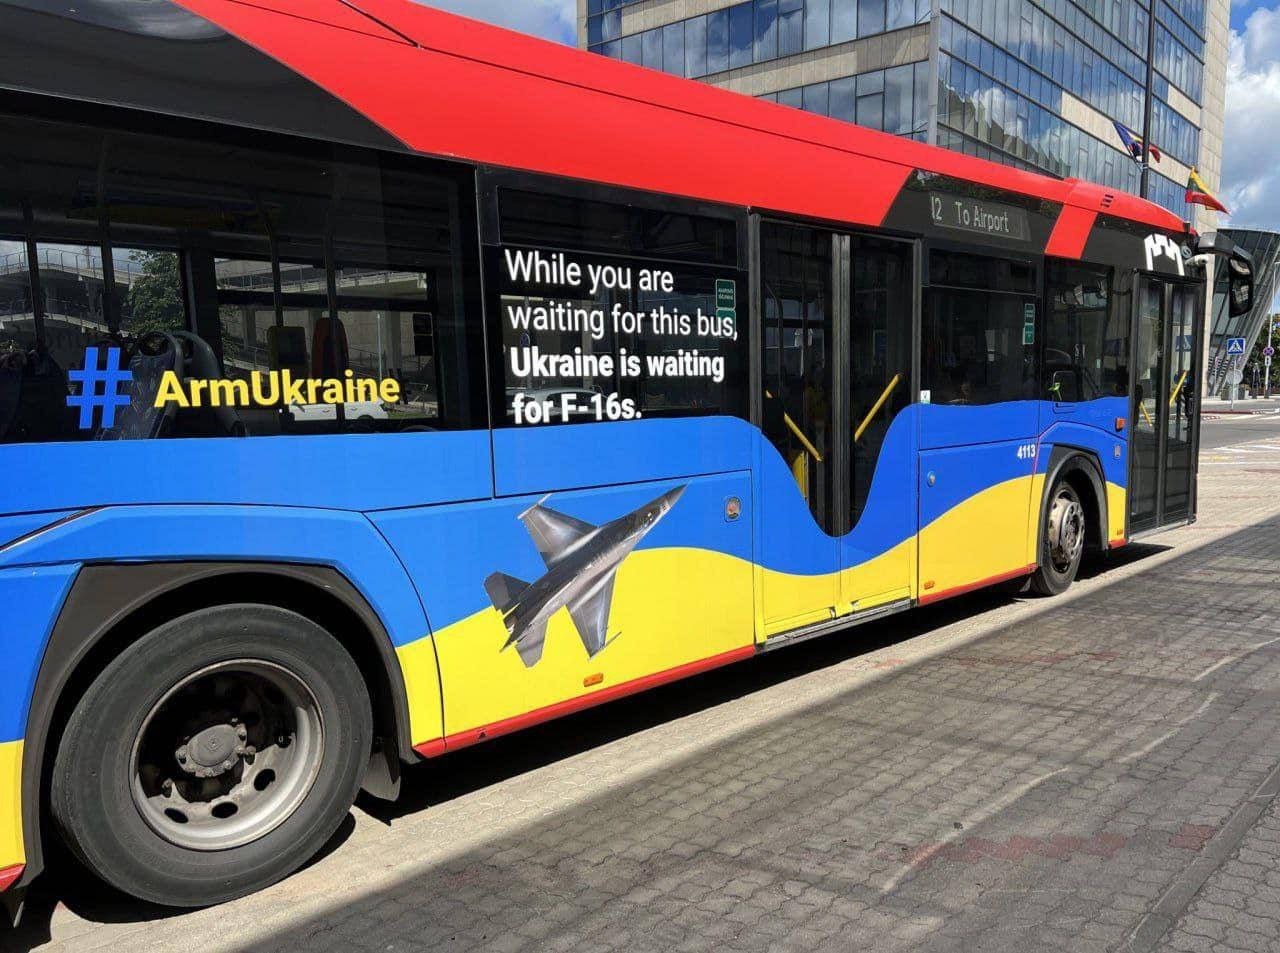 Так выглядят сейчас автобусы в Вильнюсе, где проходит саммит НАТО. На них написано: в то время как вы ждете автобус, Украина ждет F-16.